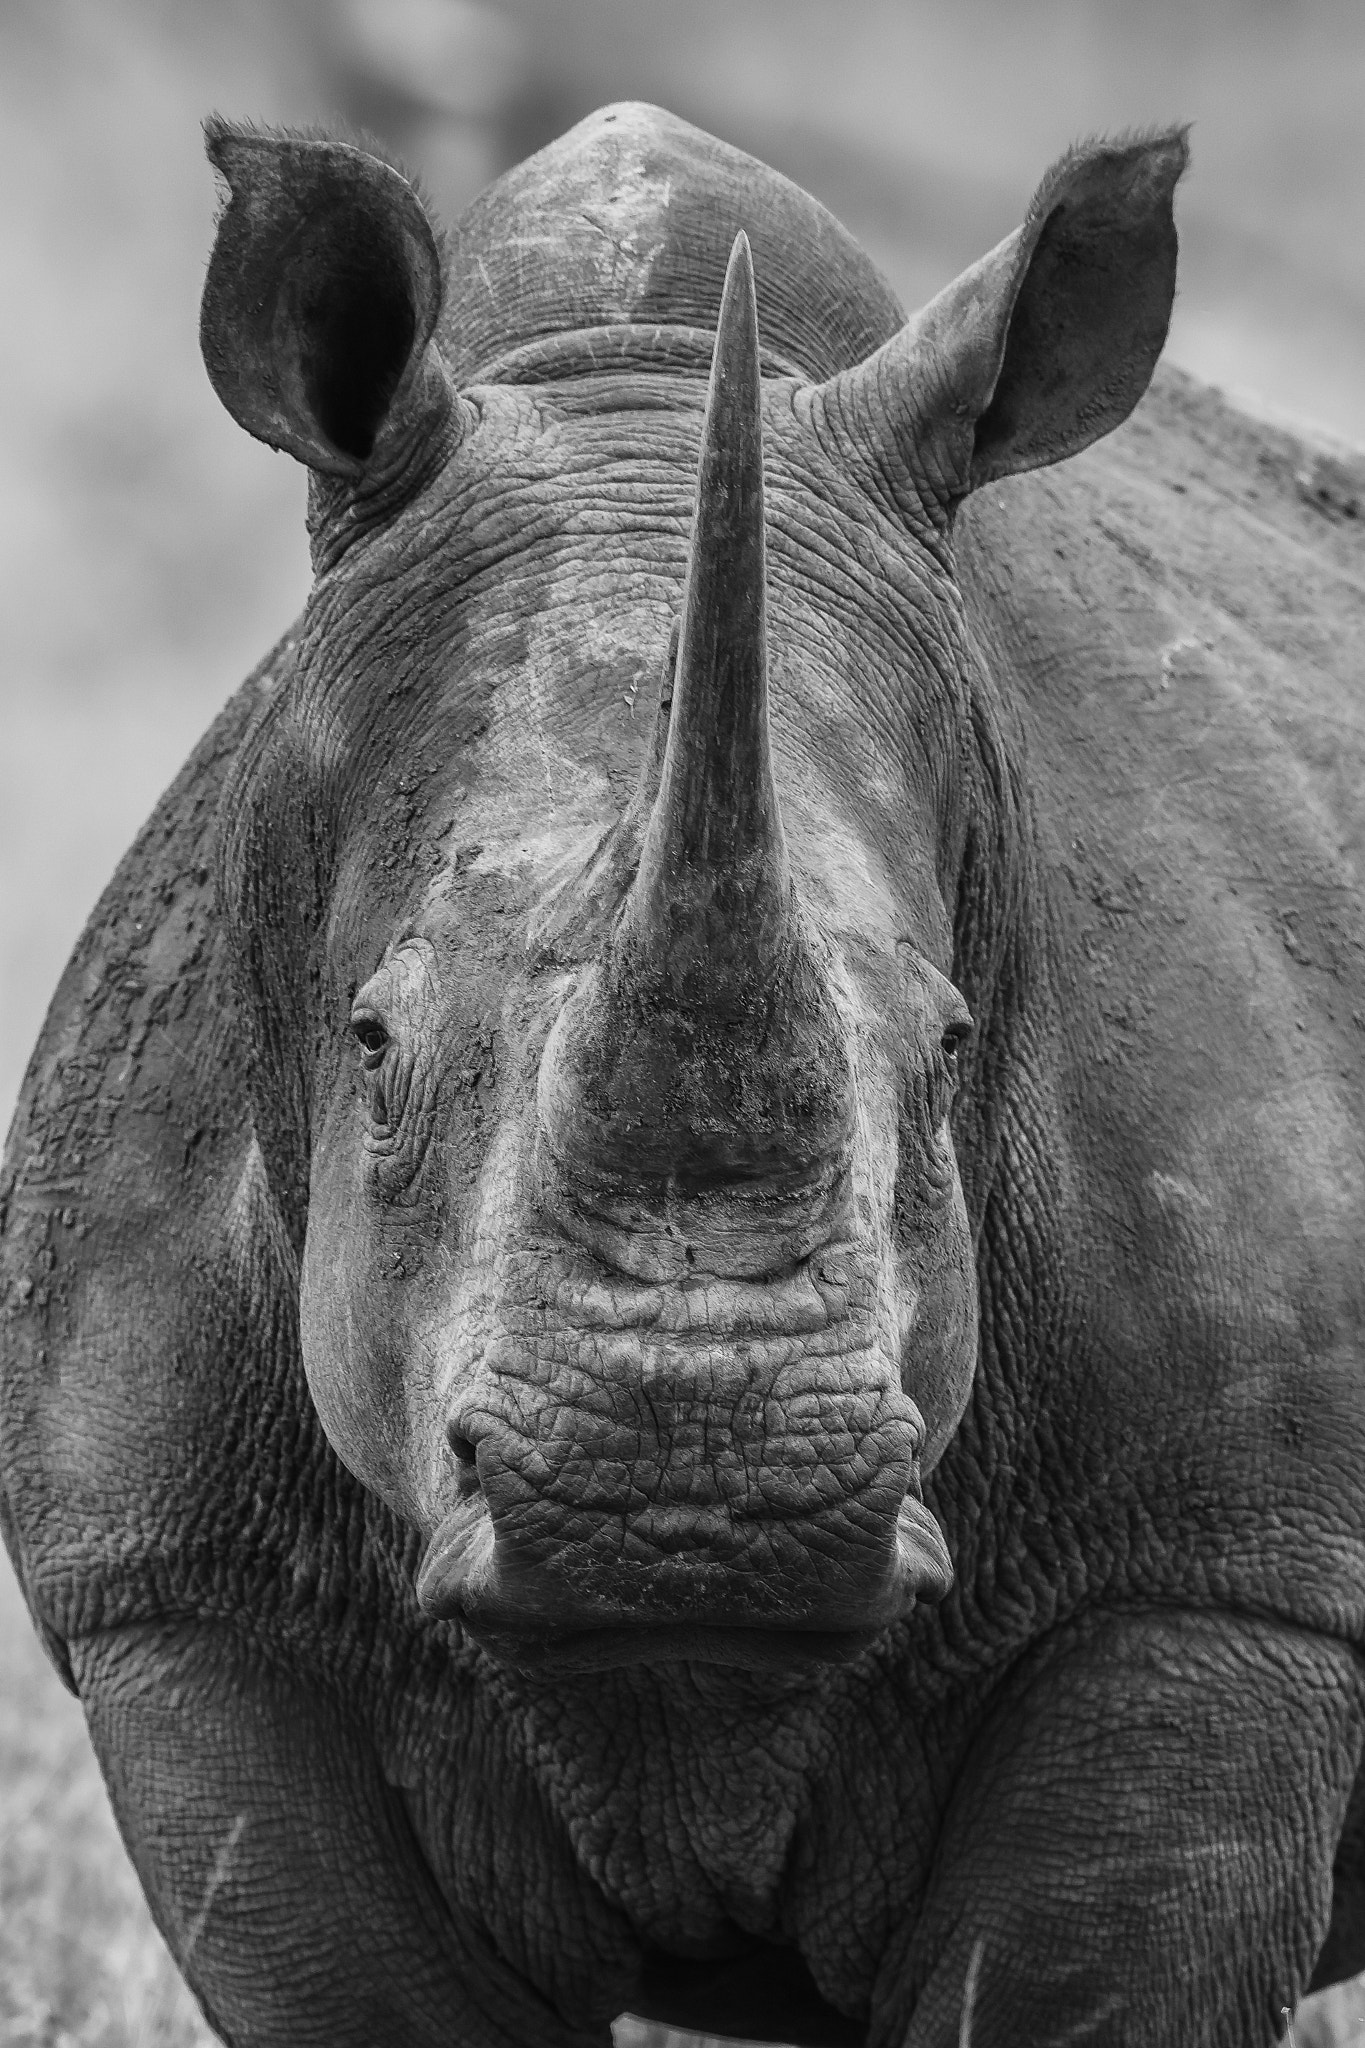 Nikon D7100 + Nikon AF-S Nikkor 600mm F4G ED VR sample photo. Rinoceronte photography